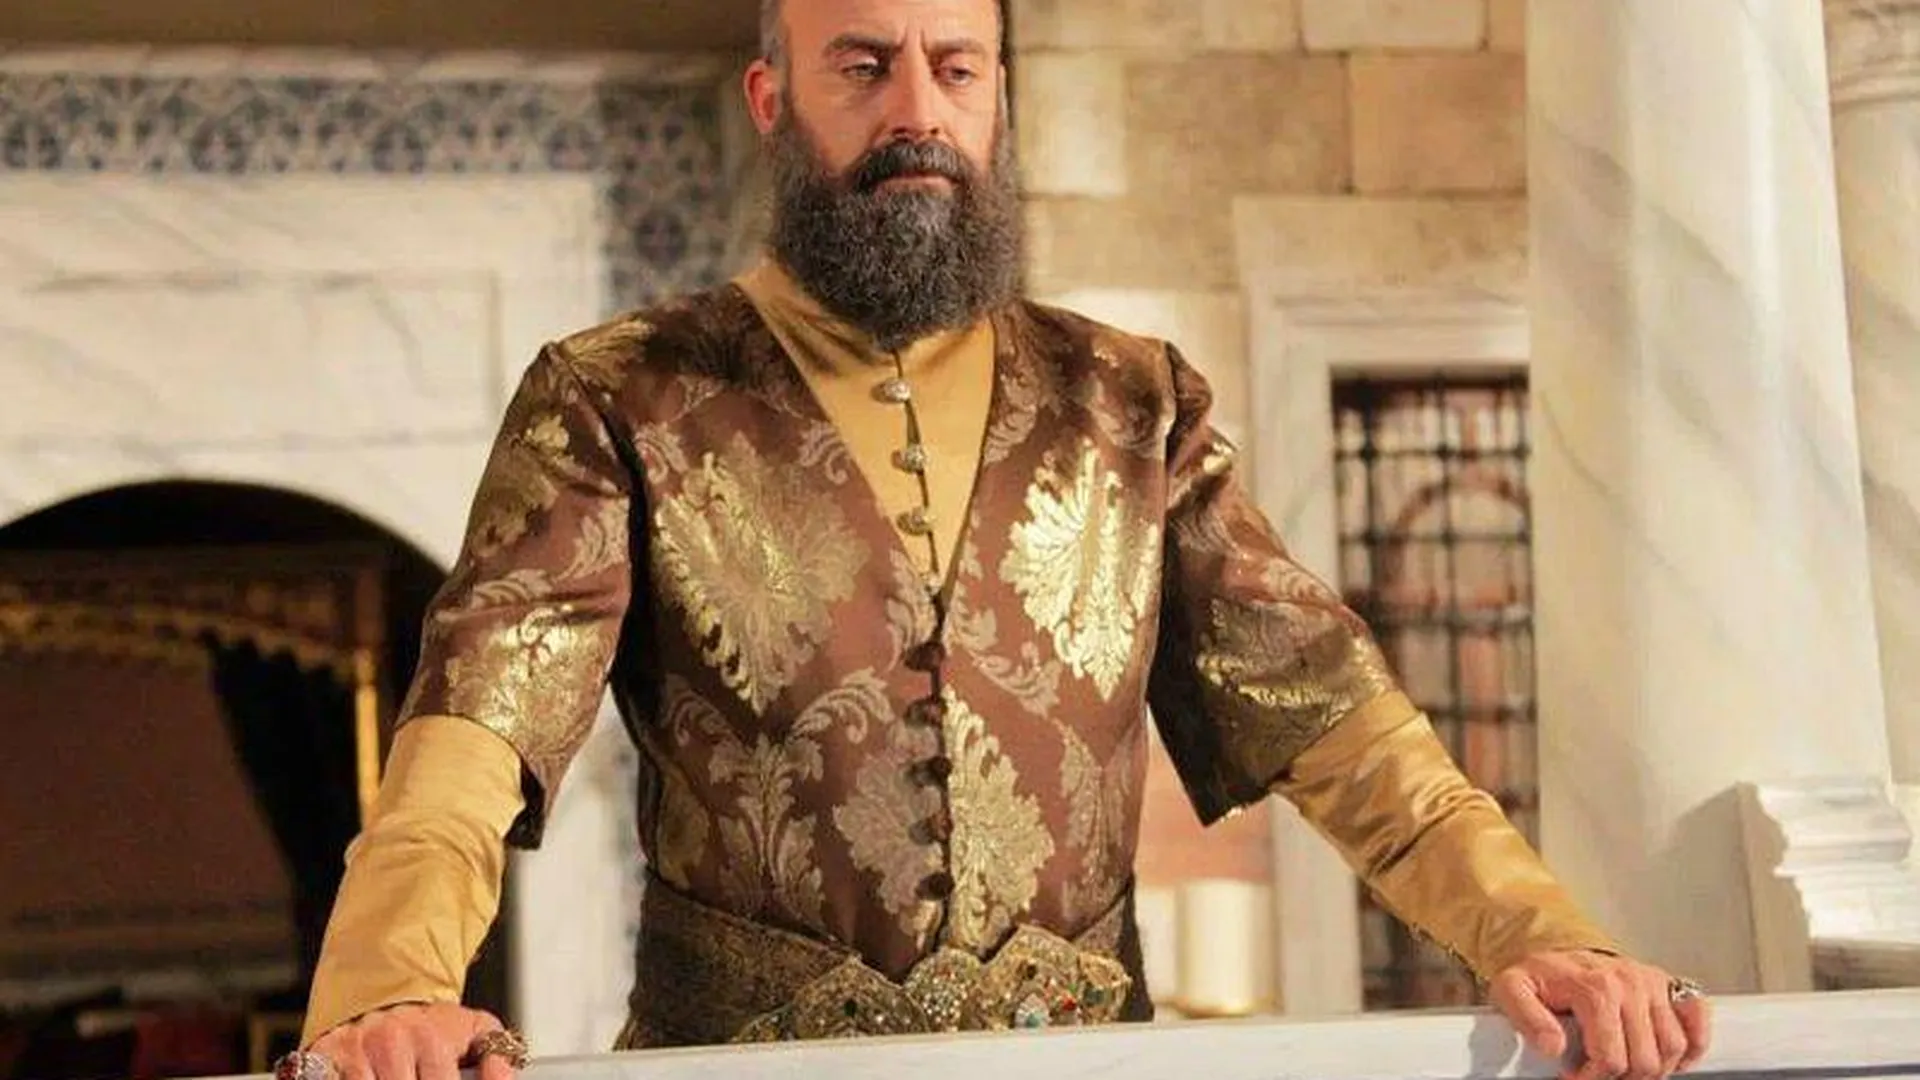 Почему жена заставляет мужа преображаться в турецкого султана из сериала – ответ психолога